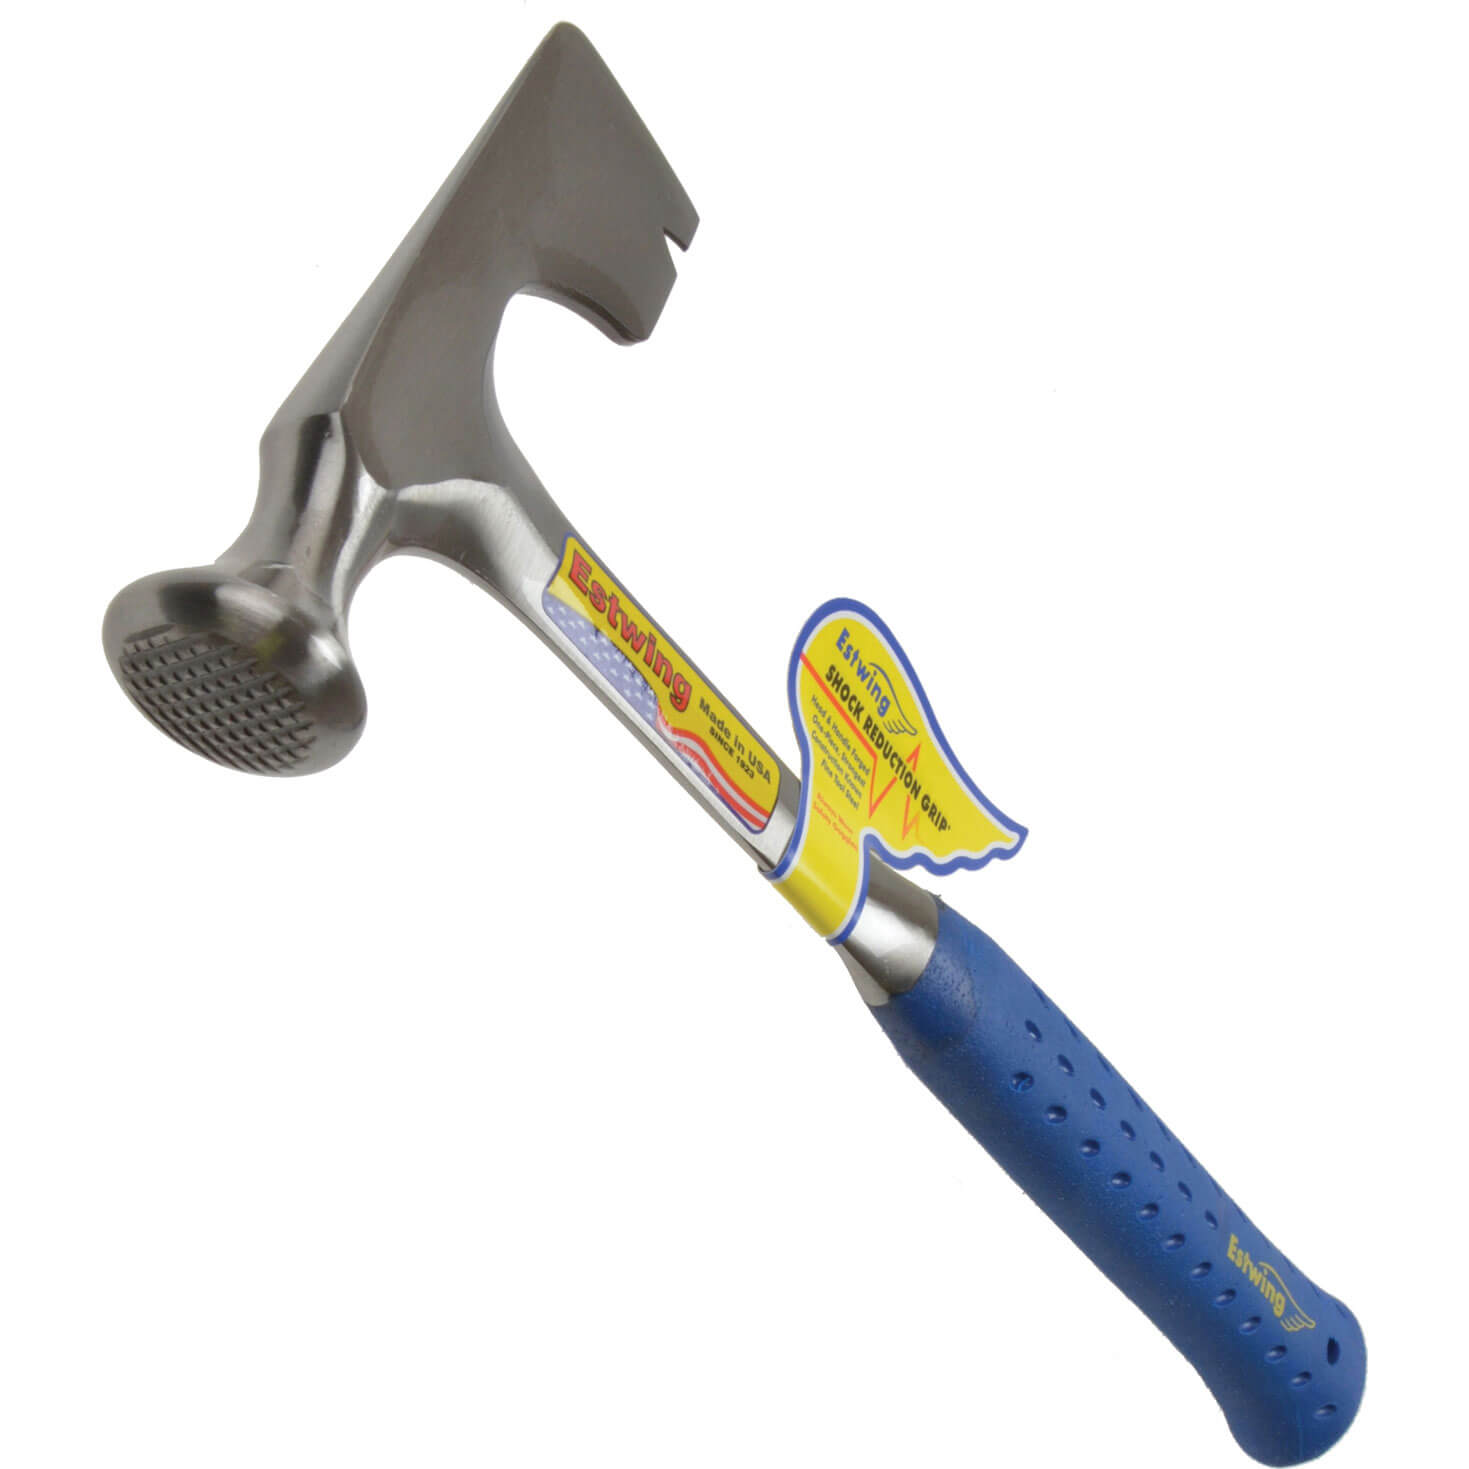 Estwing Surestrike Drywall Hammer 312g